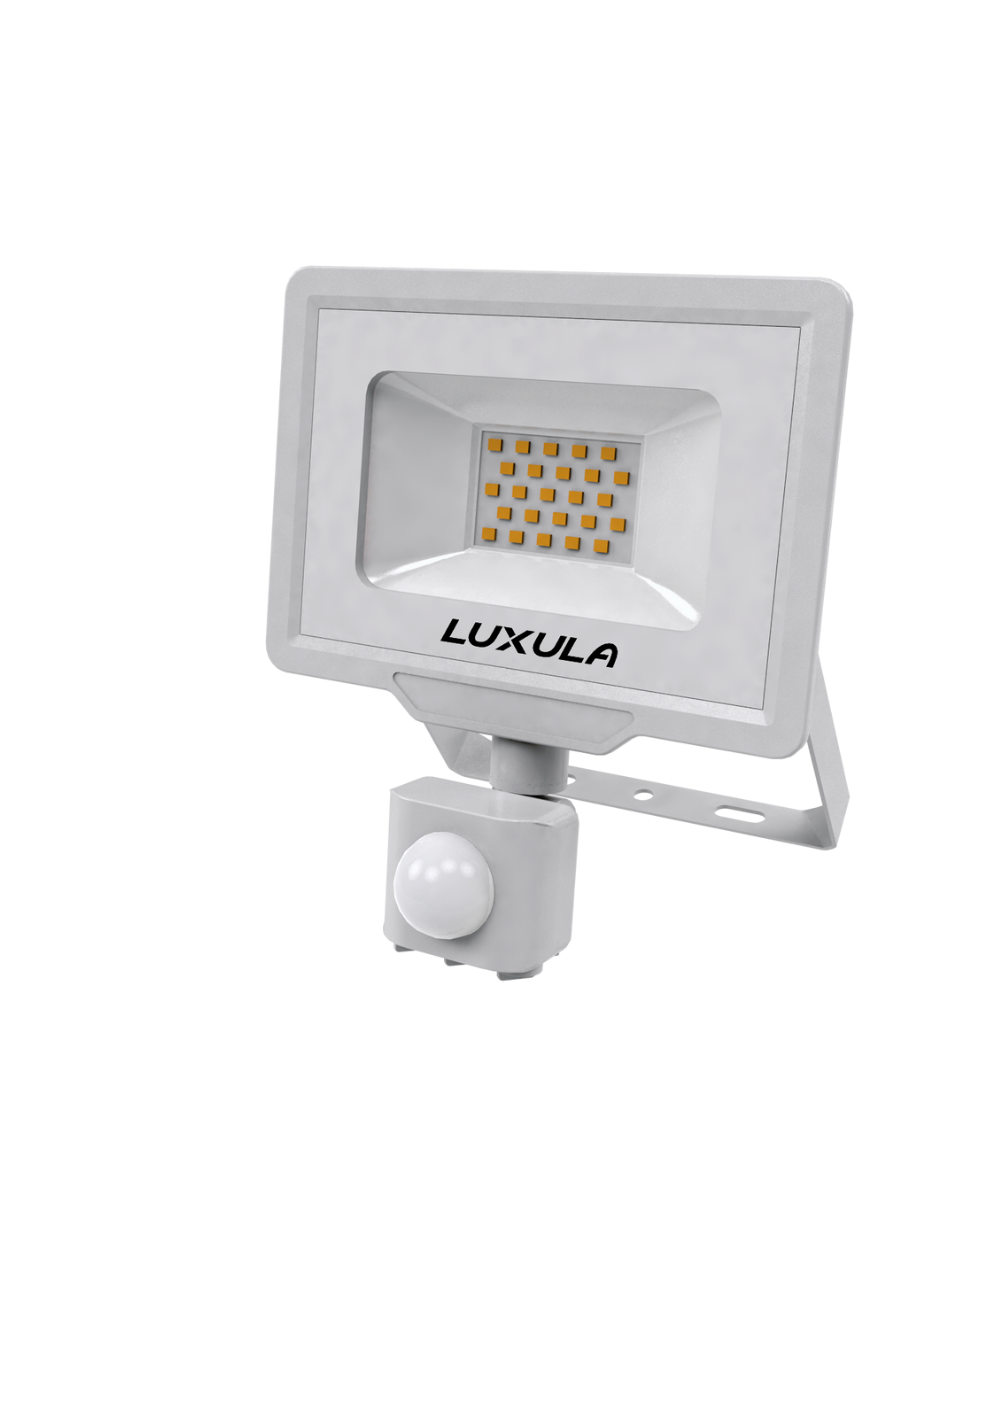 LED-Fluter mit Bewegungsmelder, 20 W, 3000 K (warmweiß), 2000 lm, weiß, IP65, TÜV-geprüft